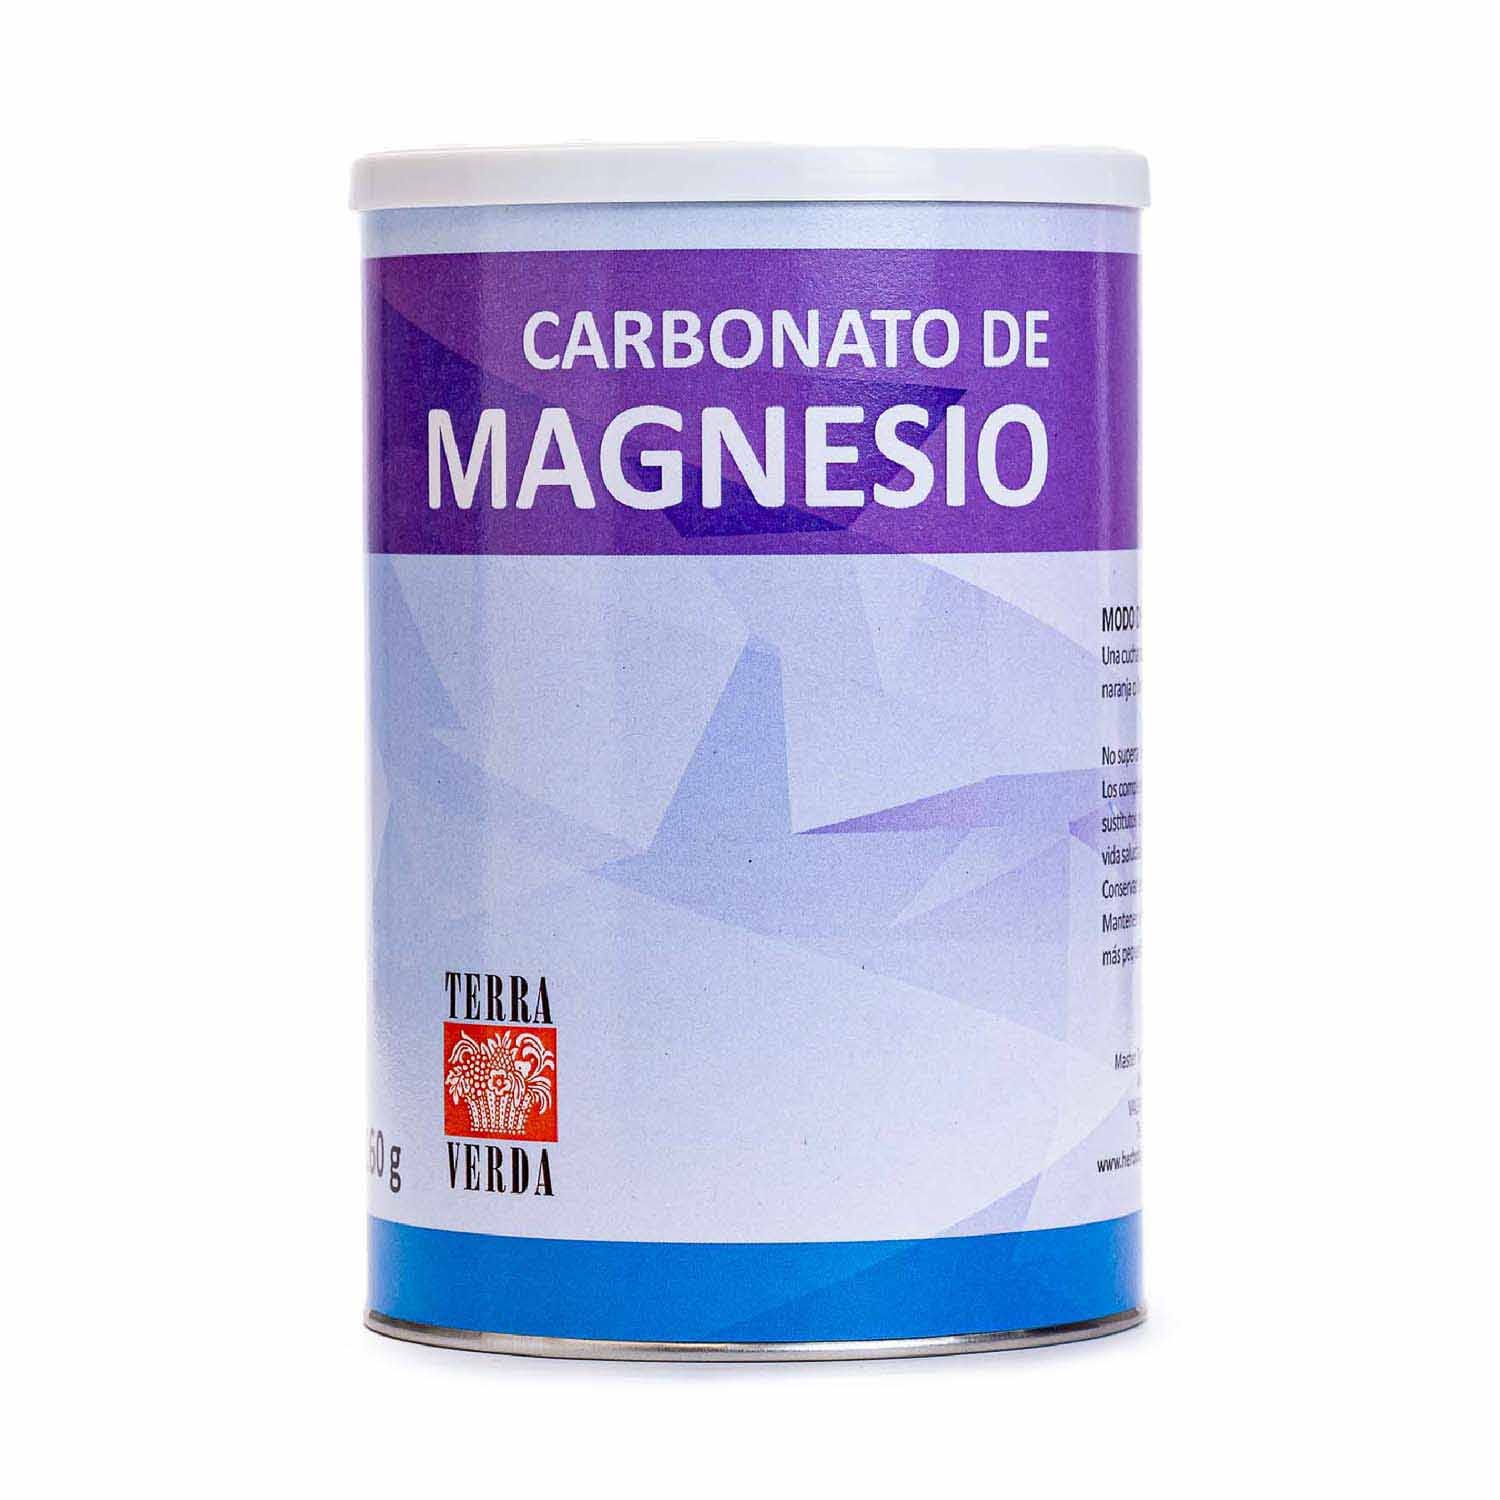 Carbonato de Magnesio 150g - Complemento Soria Natural